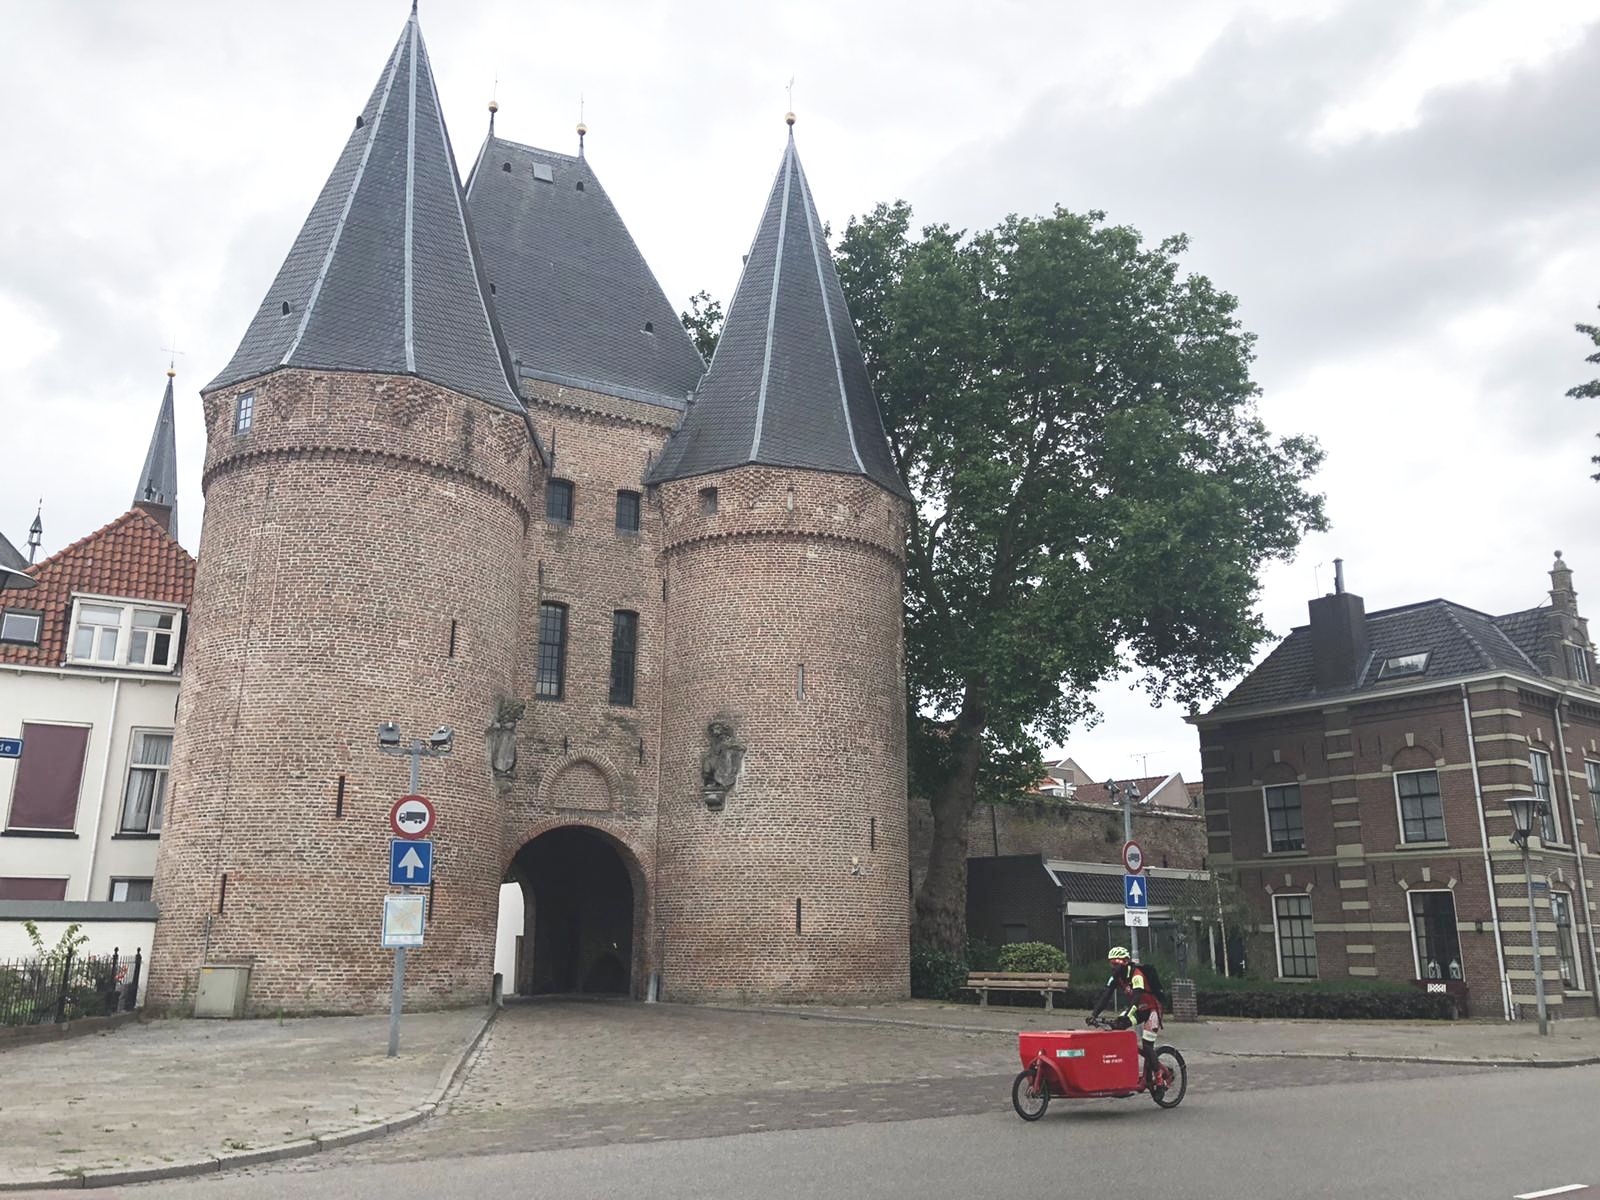 Cycloon opent fietskoeriersvestiging in Kampen